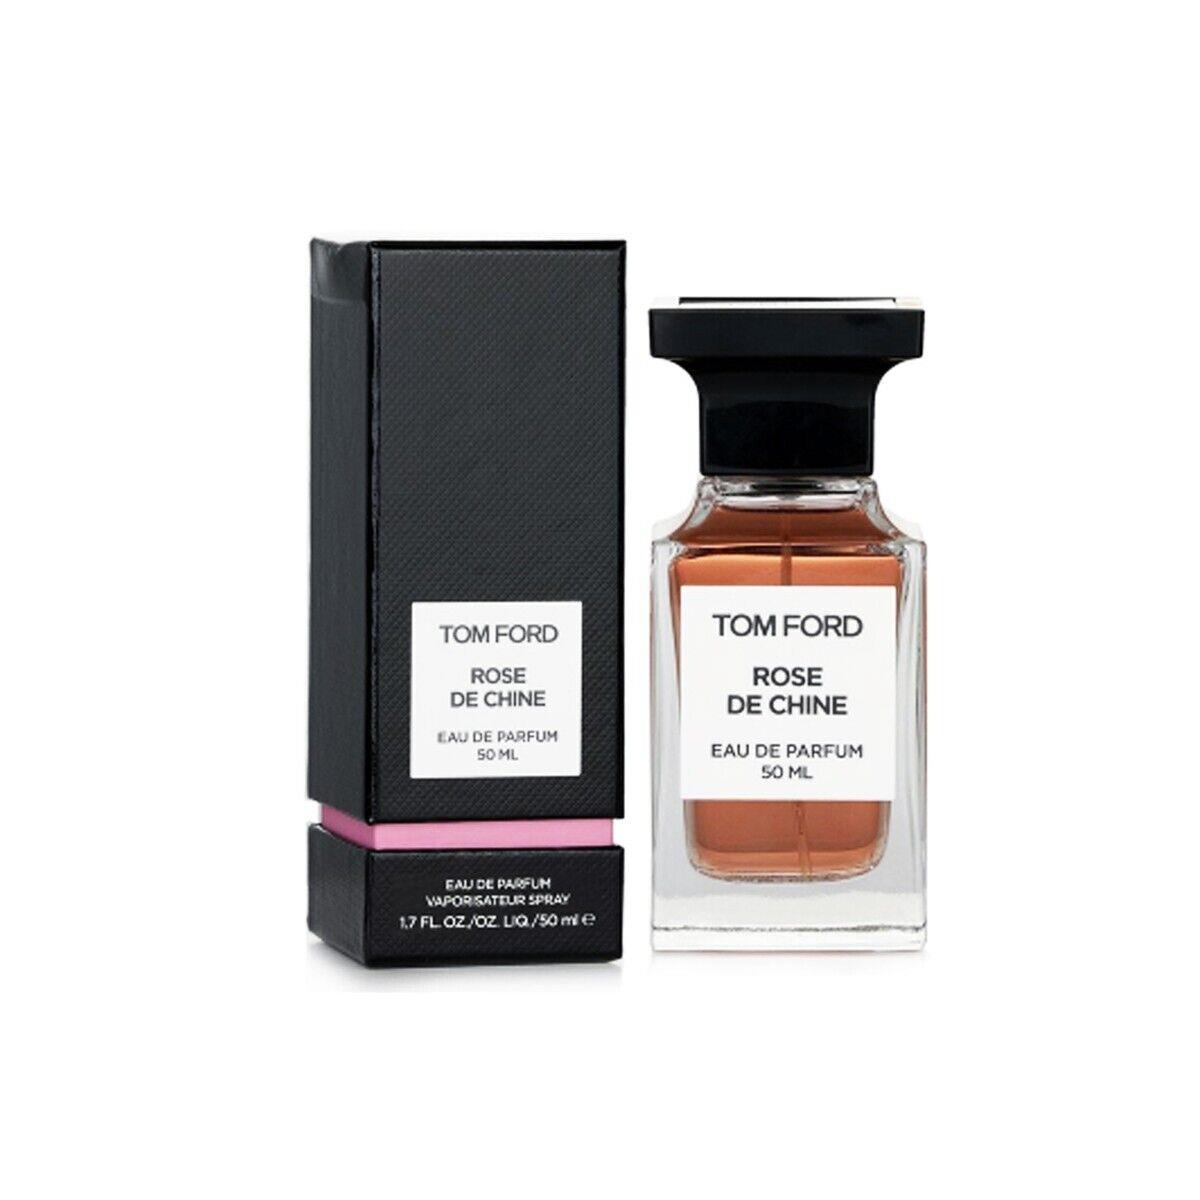 Tom Ford Rose DE Chine Eau De Parfum / Edp Spray - Size 1.7 Oz. / 50mL